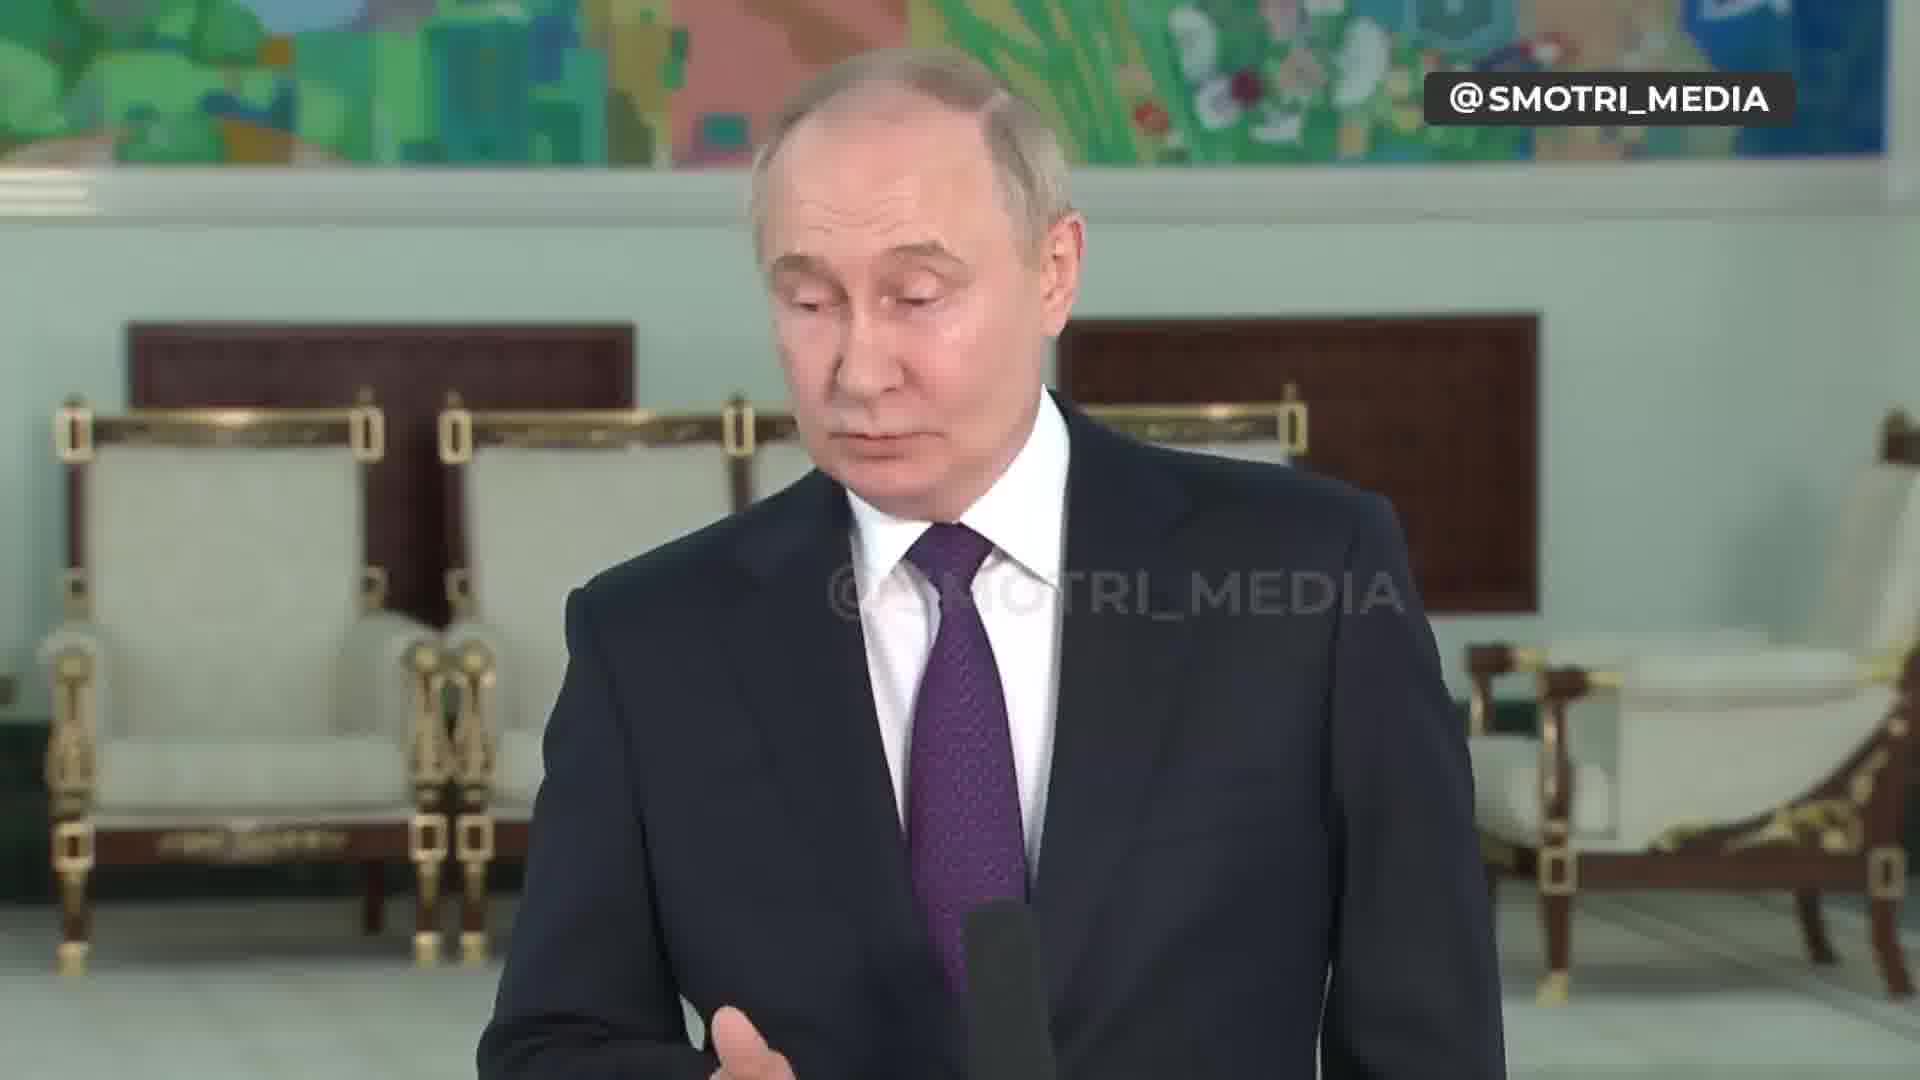 Poutine déclare que la Verkhovna Rada d'Ukraine est légitime et que le président de la Verkhovna Rada devrait être le président par intérim